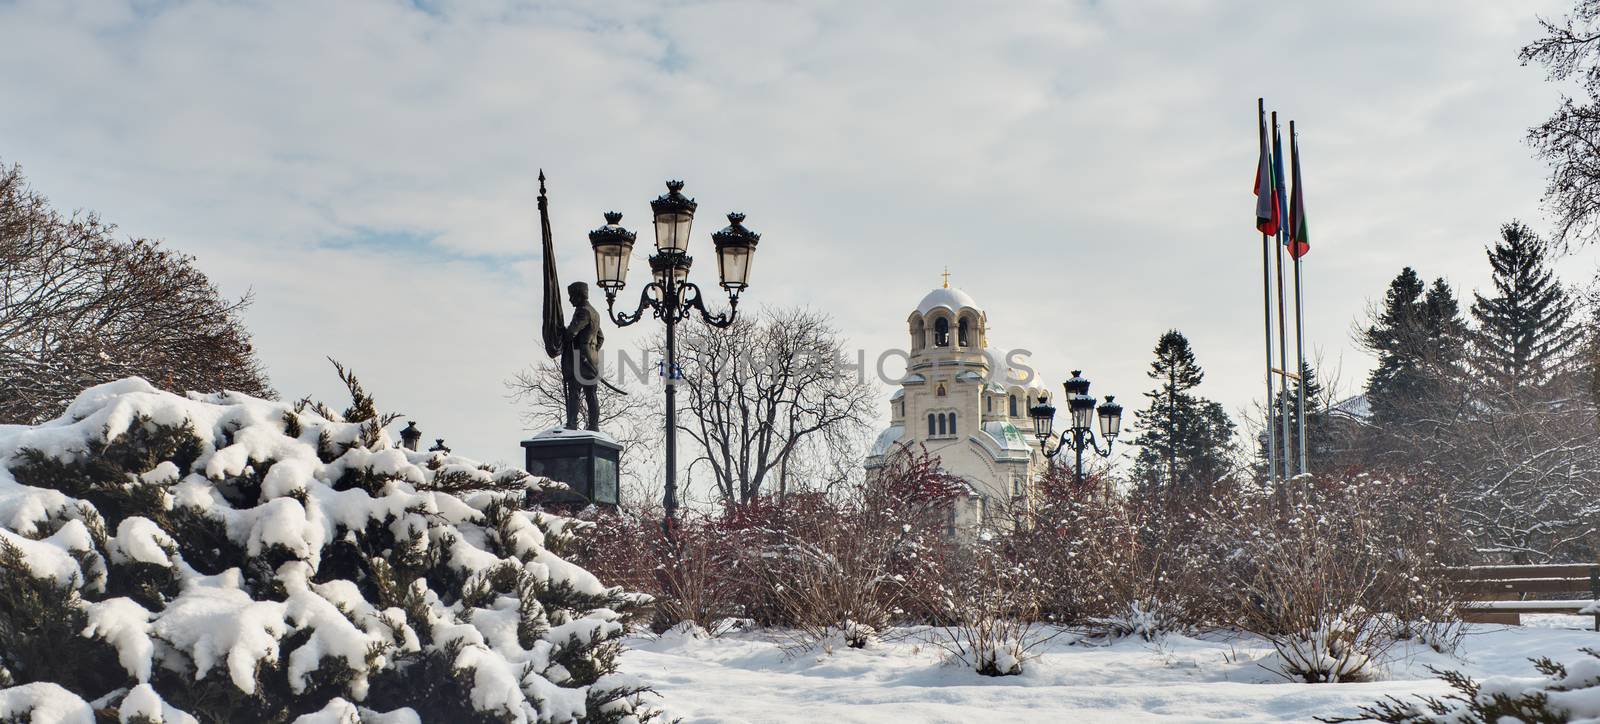 Aleksander Nevski Cathedral Winter Sofia Bulgaria by vilevi